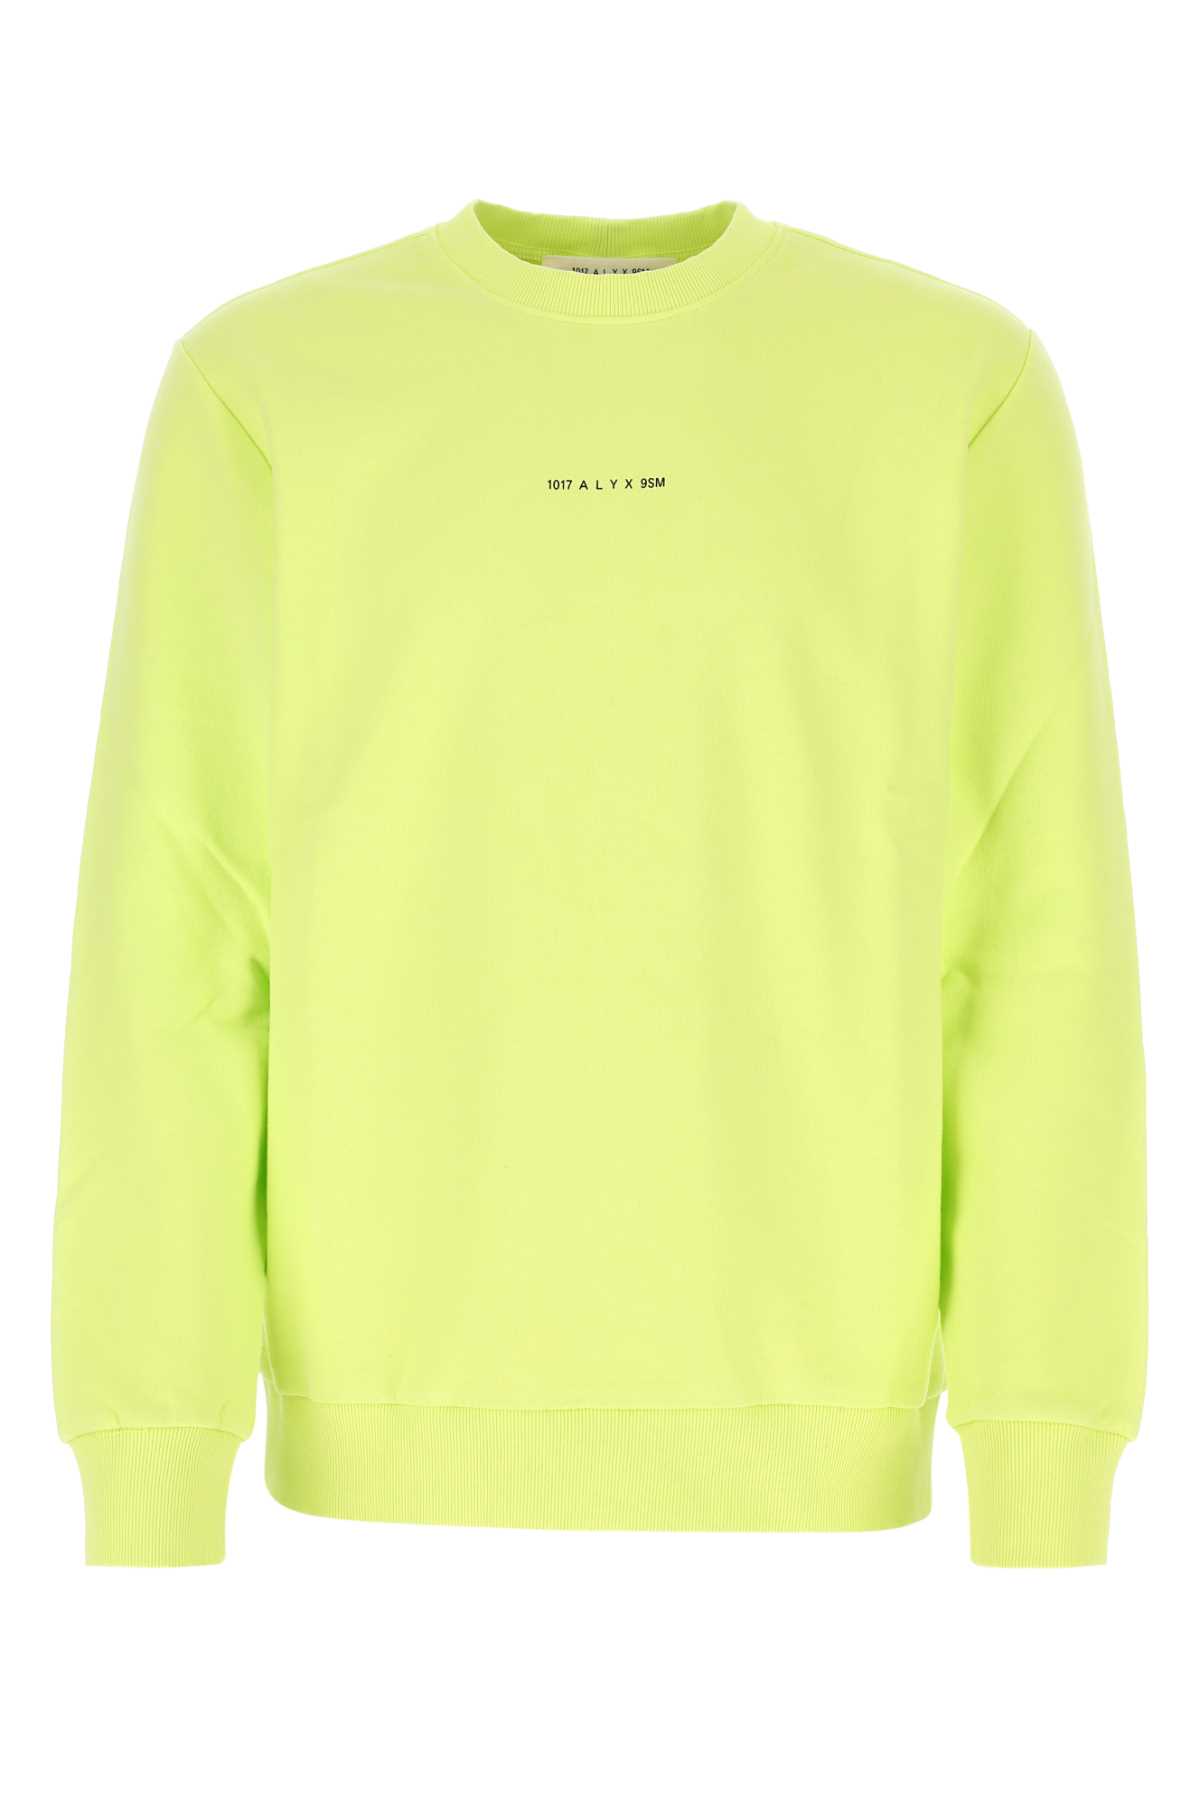 Fluo Yellow Cotton Oversize Sweatshirt